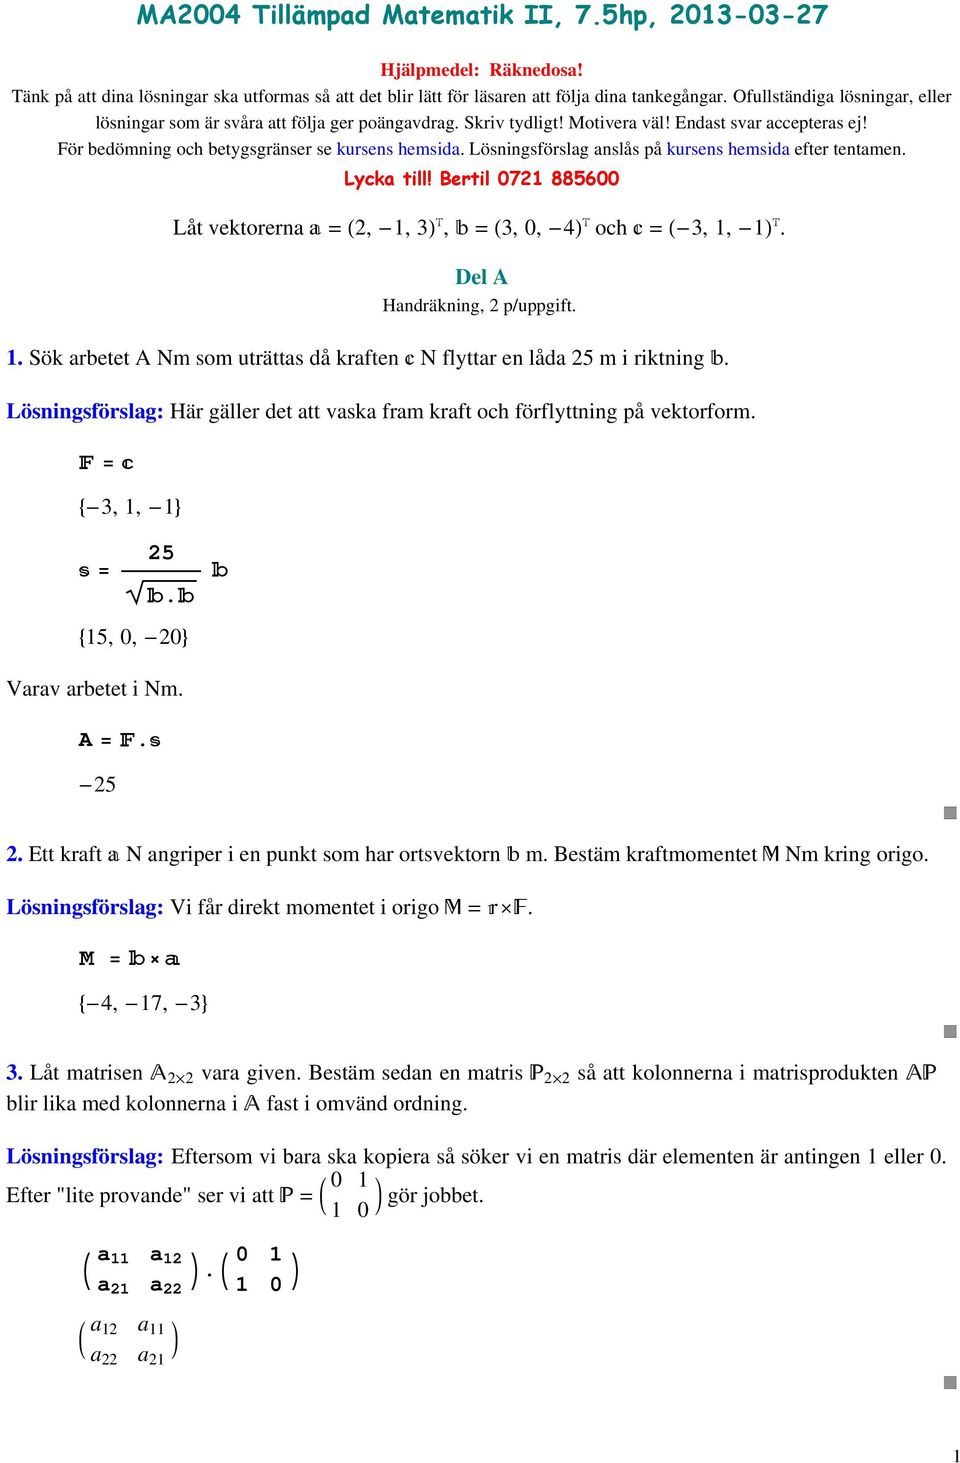 Lösningsförslag anslås på kursens hemsida efter tentamen. Lycka till! Bertil 0 88600 Låt vektorerna a =, -,, b =, 0, - och c = -,, -. Del A Handräkning, p/uppgift.